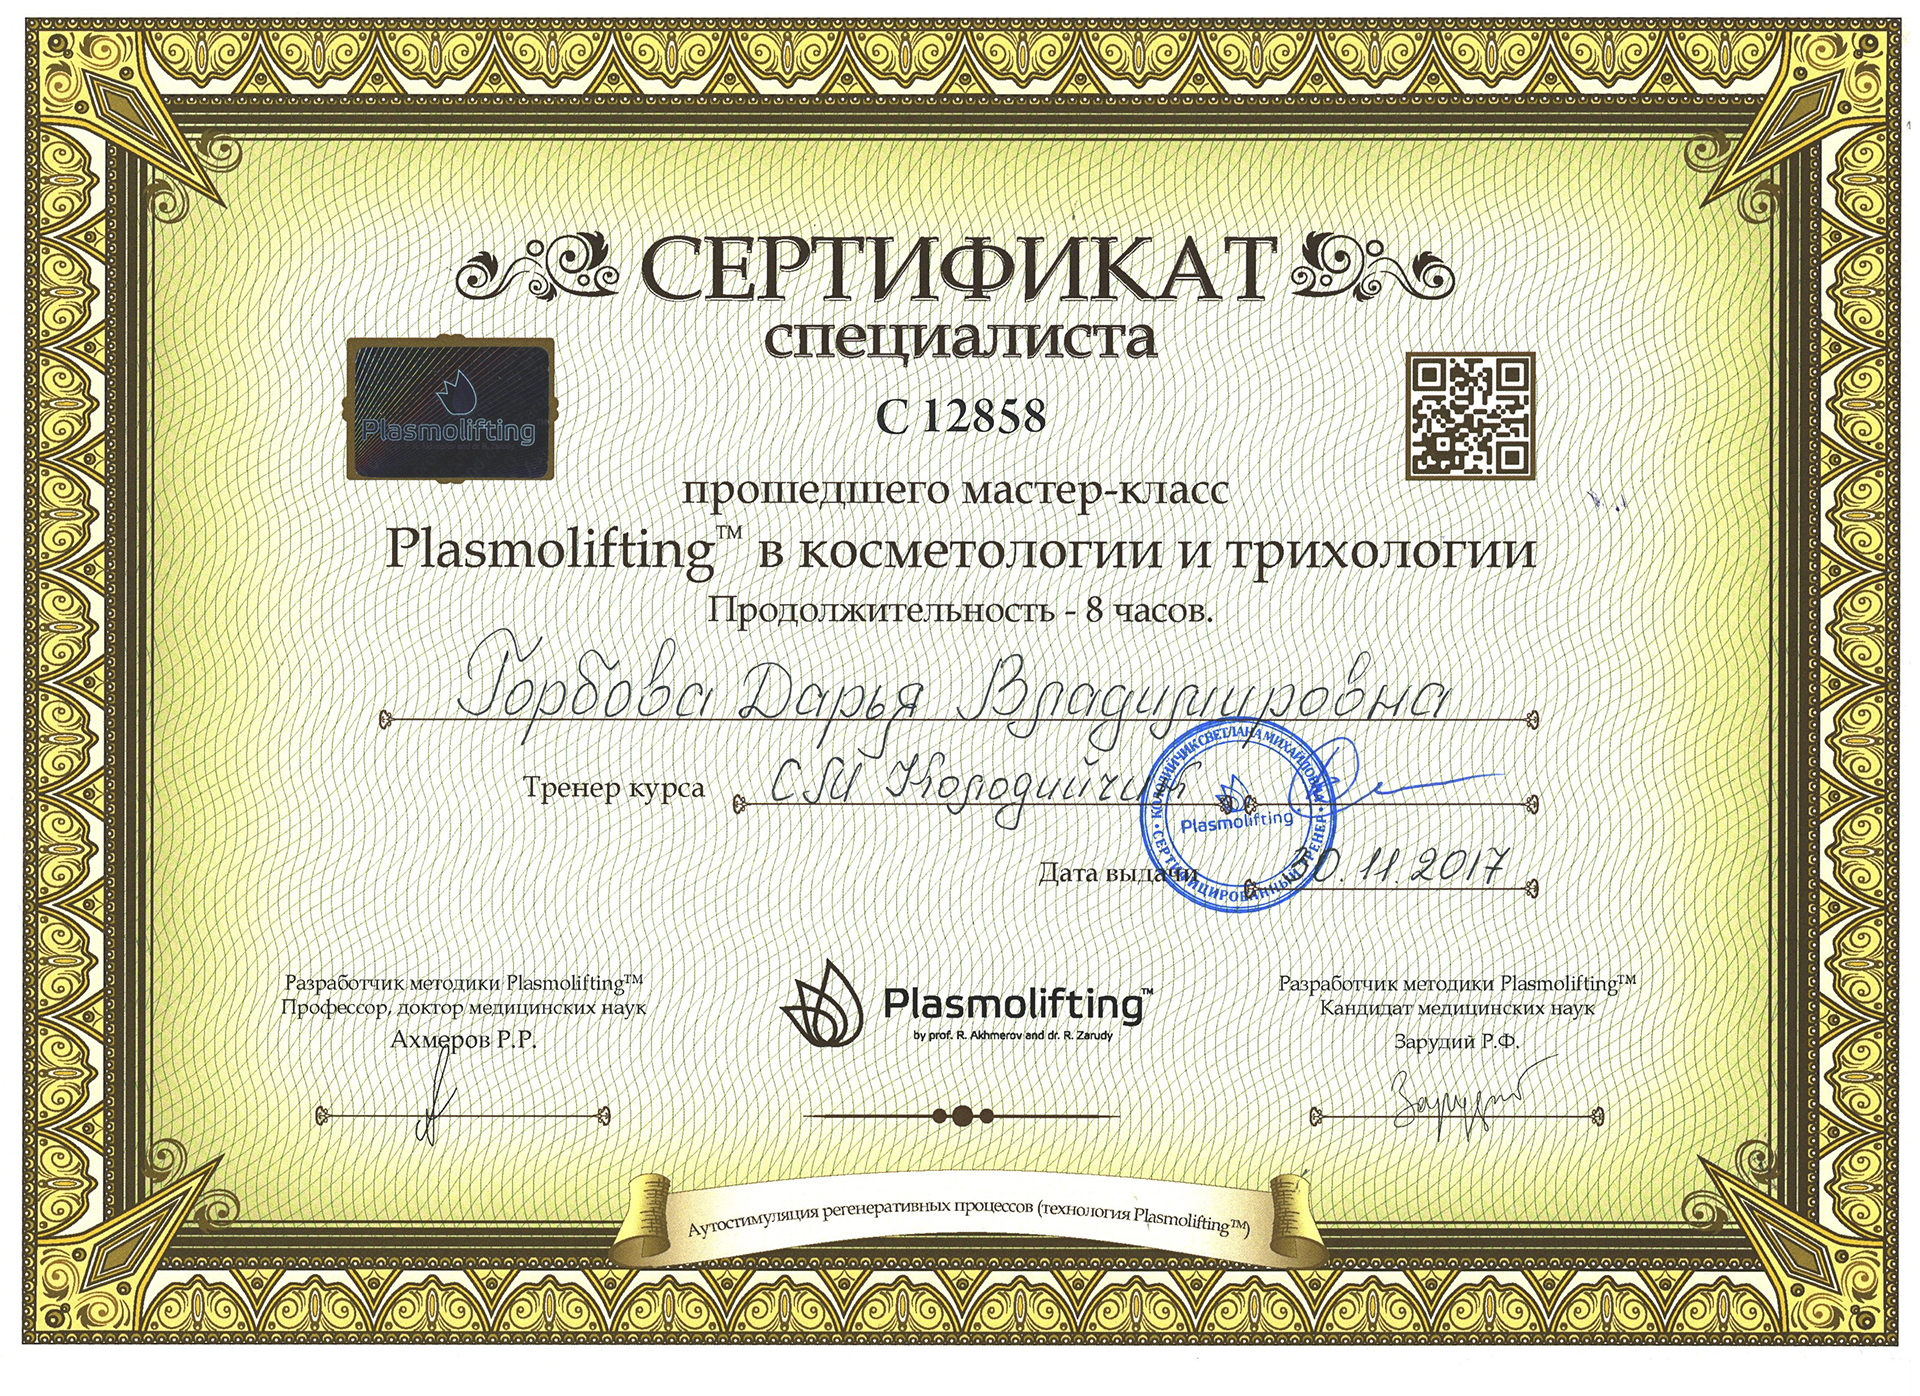 Сертификат — Мастер-класс «Plasmolifting в косметологии и трихологии». Горбова Дарья Владимировна